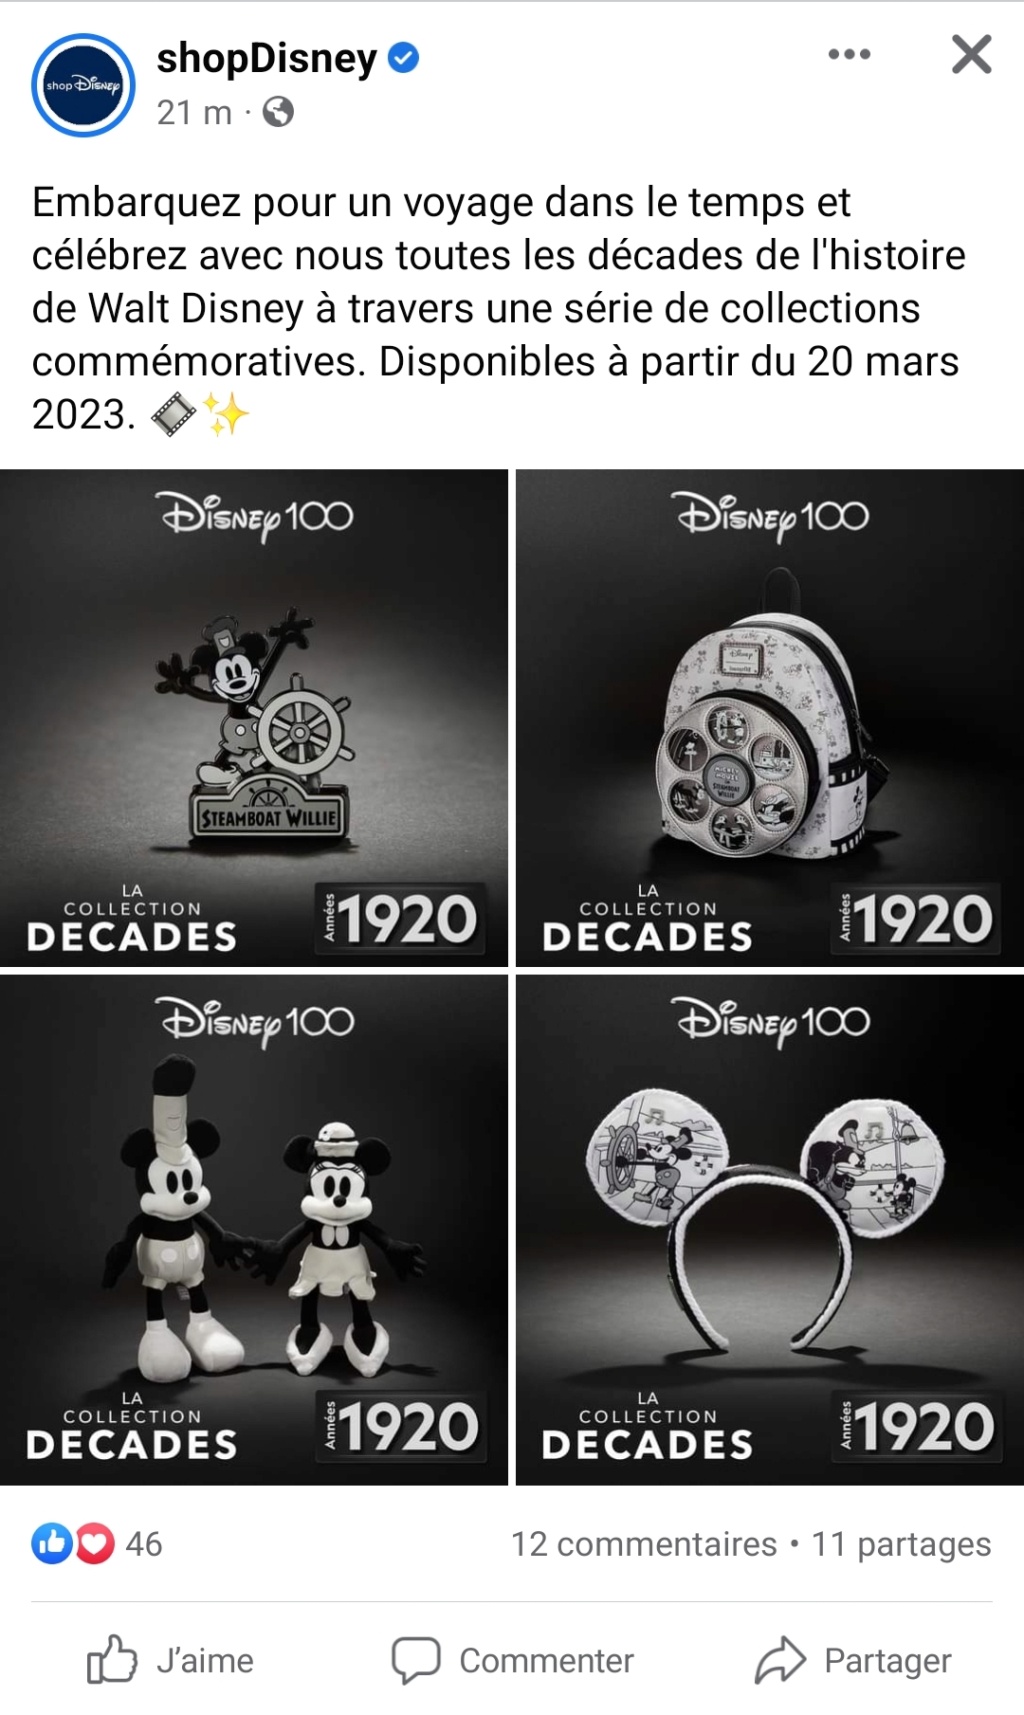 [Collection] Disney 100 Decades Collection Screen10